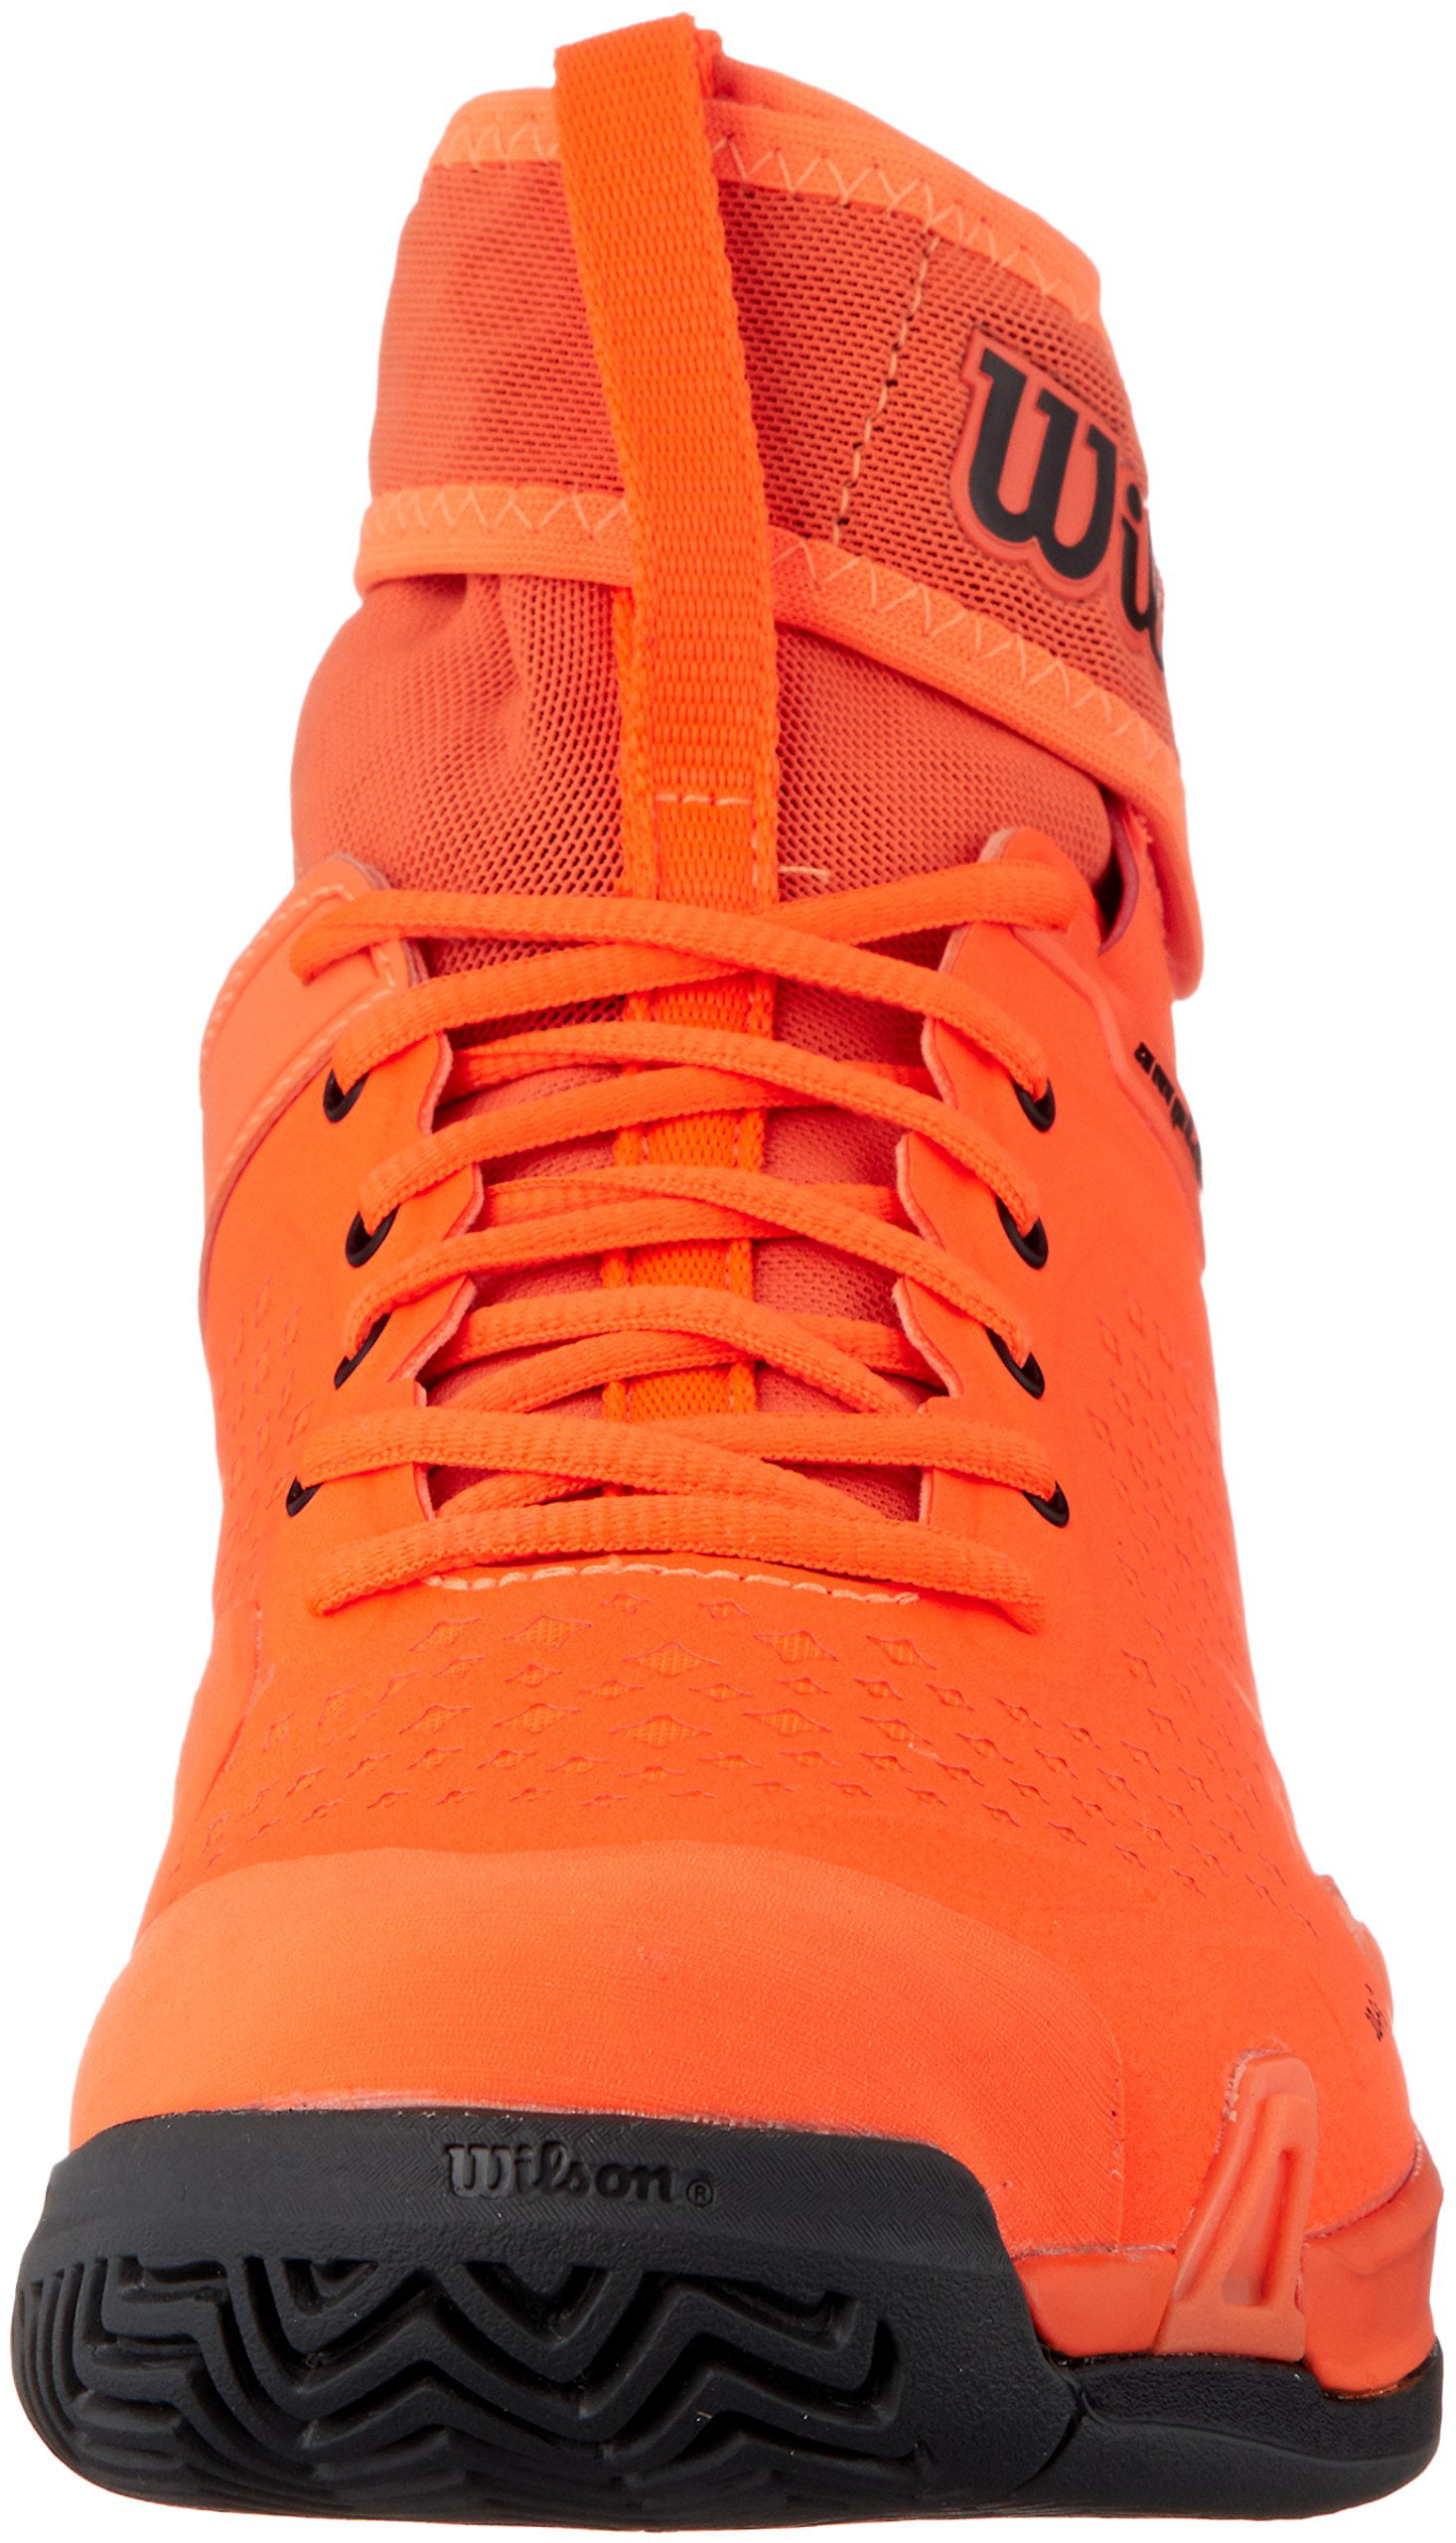 Wilson Men's Amplifeel Tennis Shoe (Shocking Orange/Magnet/Black 